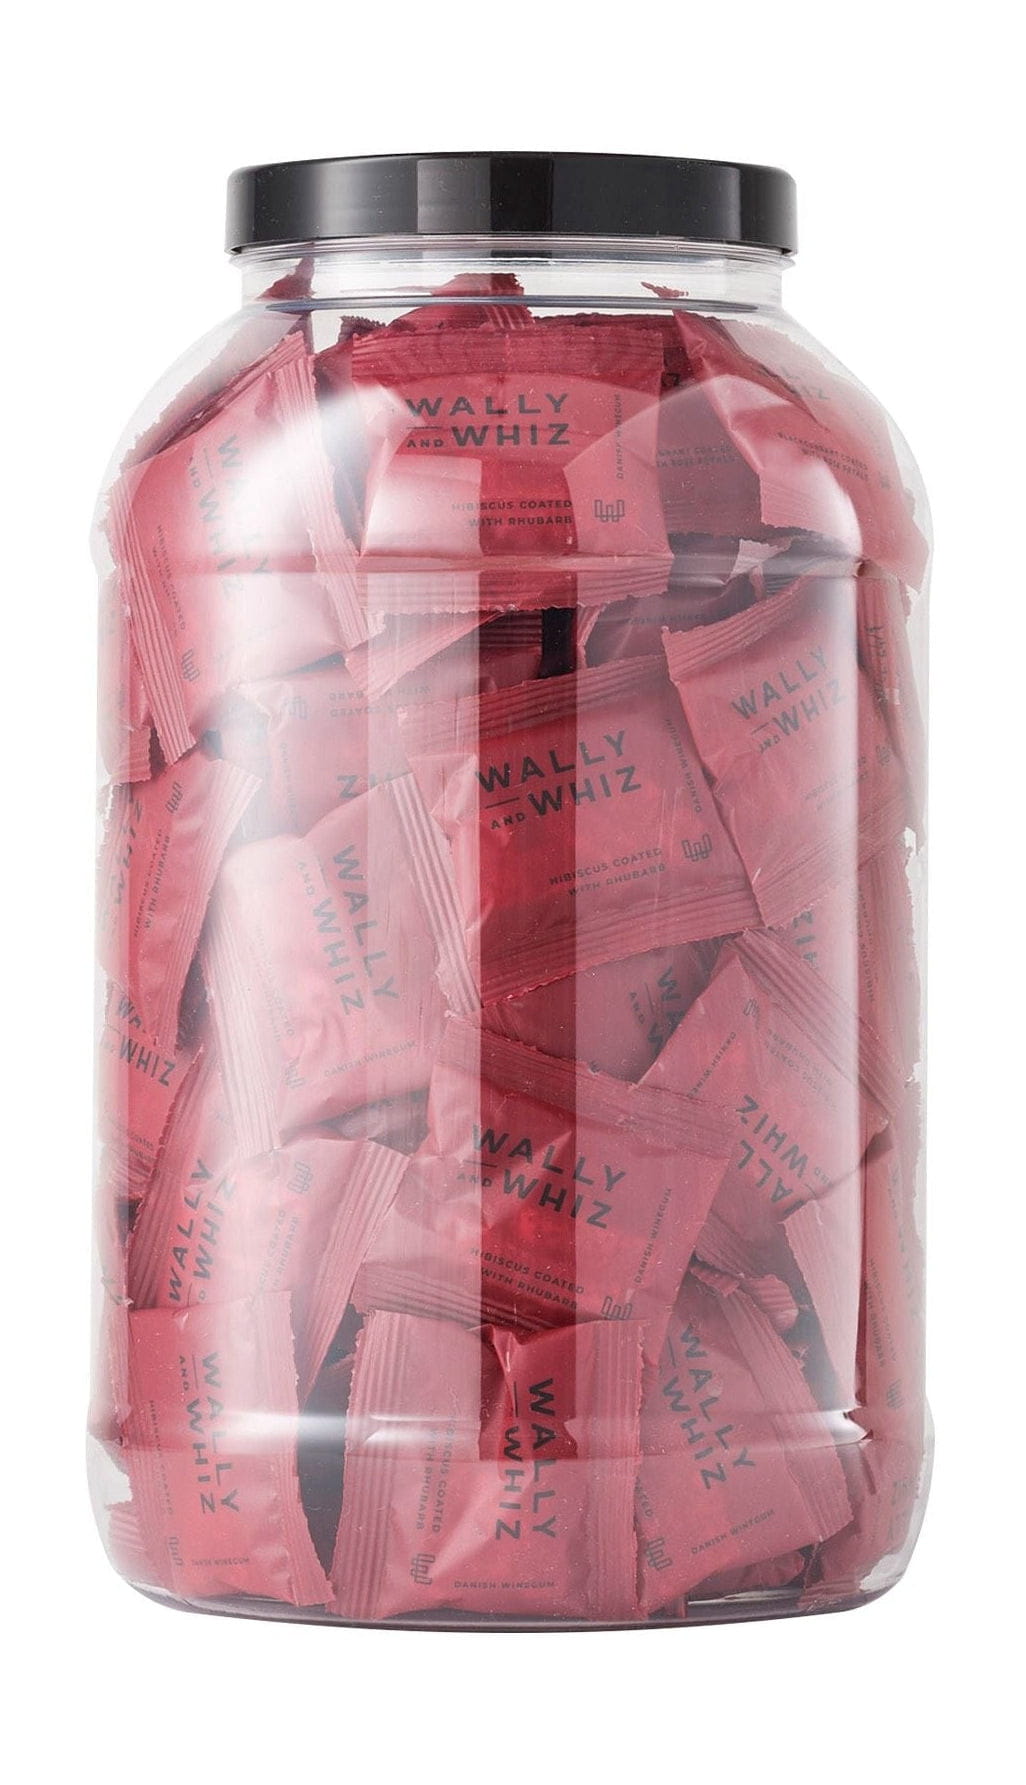 Wally And Whiz Vin gummikrukke med 125 flowpacks, hibiscus med rabarber